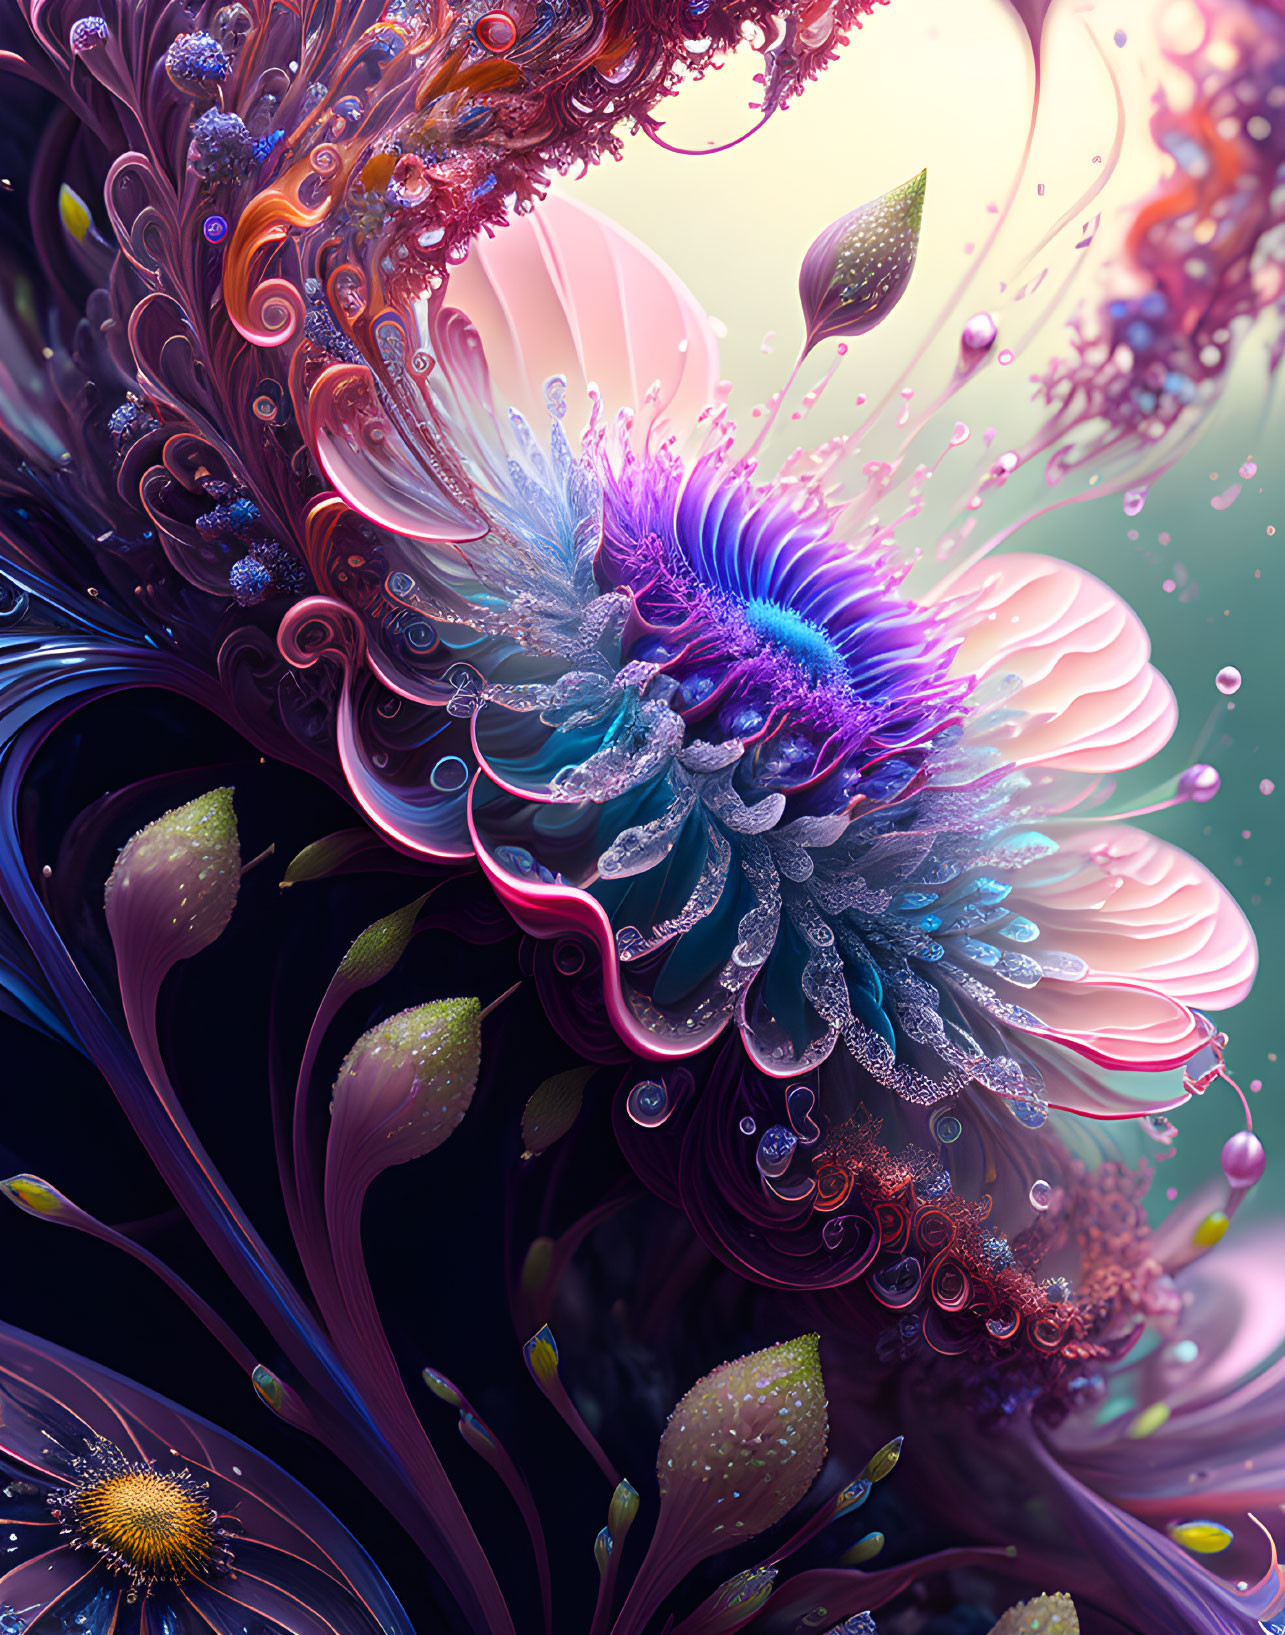 Colorful Digital Artwork of Fantastical Flower on Softly Lit Background